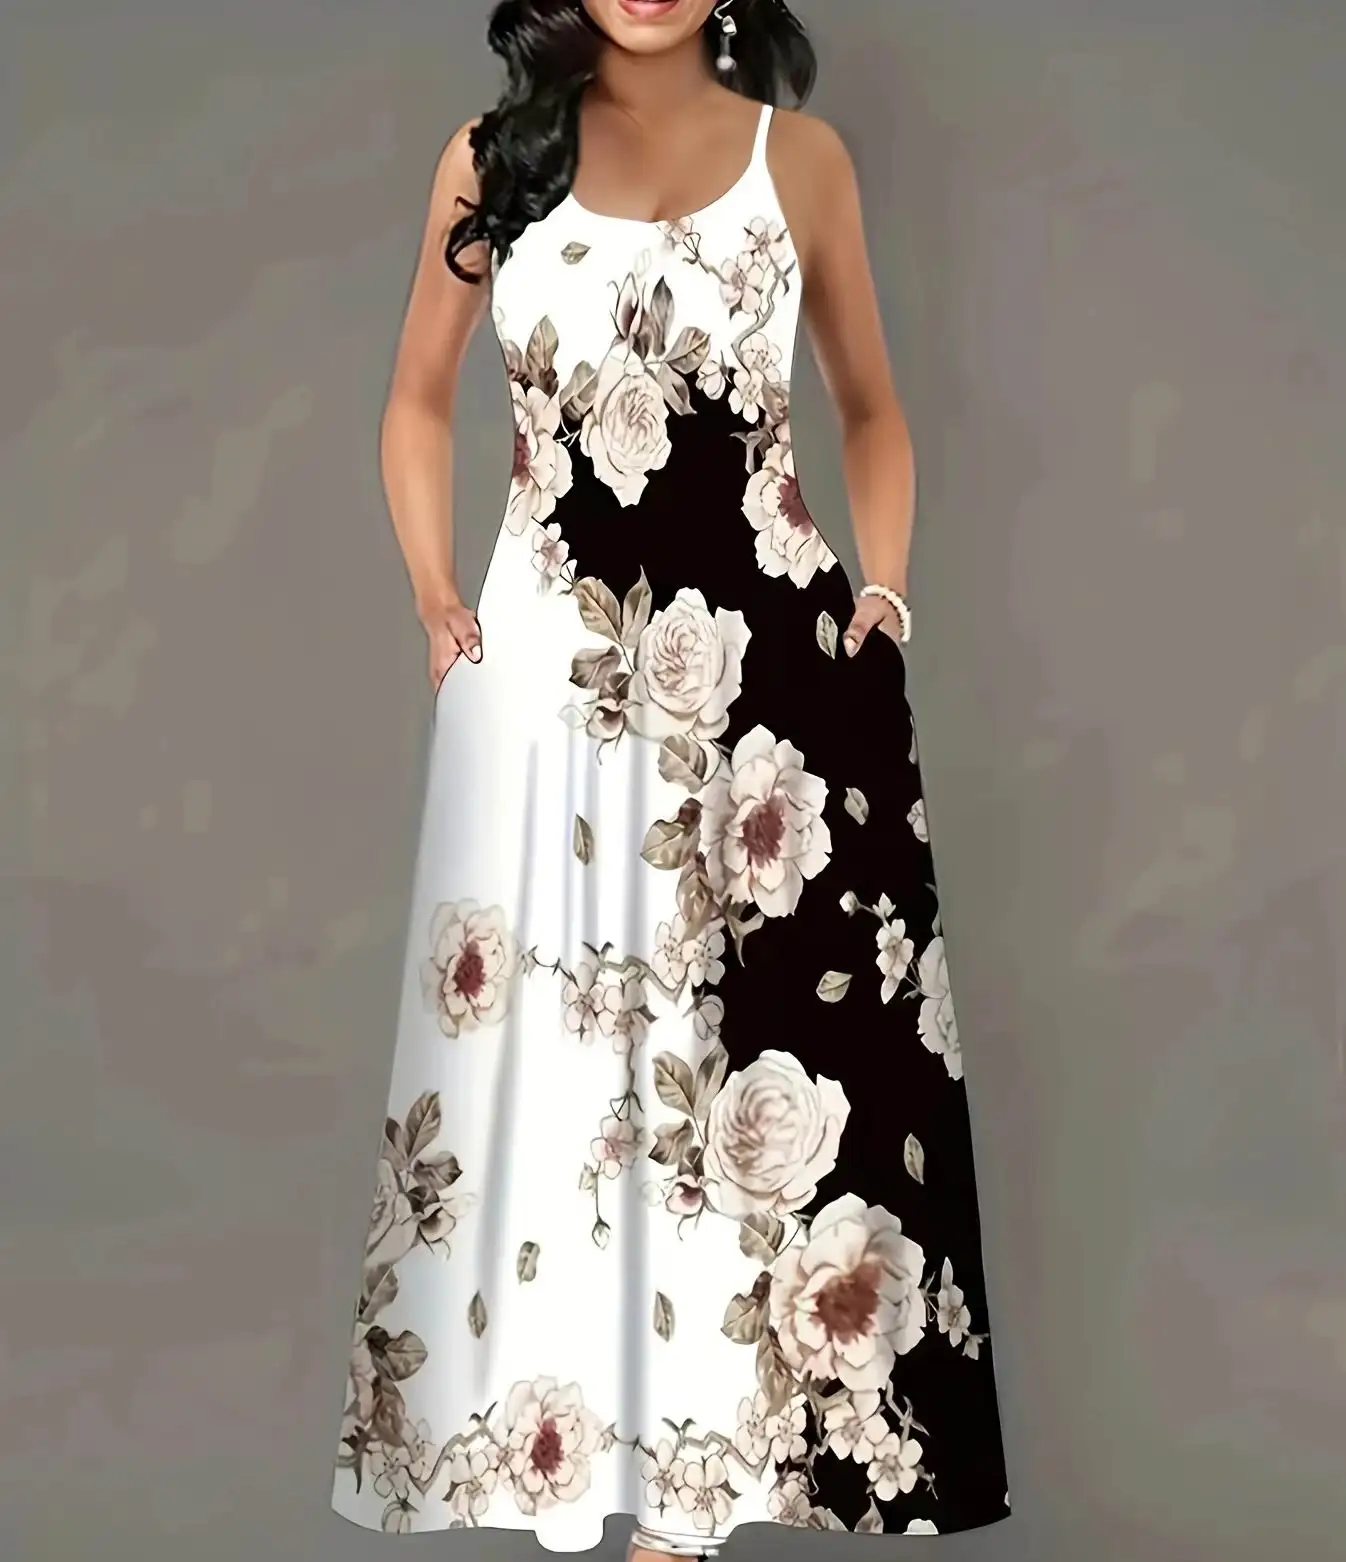 Casual estampado de flores de las mujeres de lujo elegante Oficina fiesta moda vestido de una pieza sin manga suave vestido largo para dama